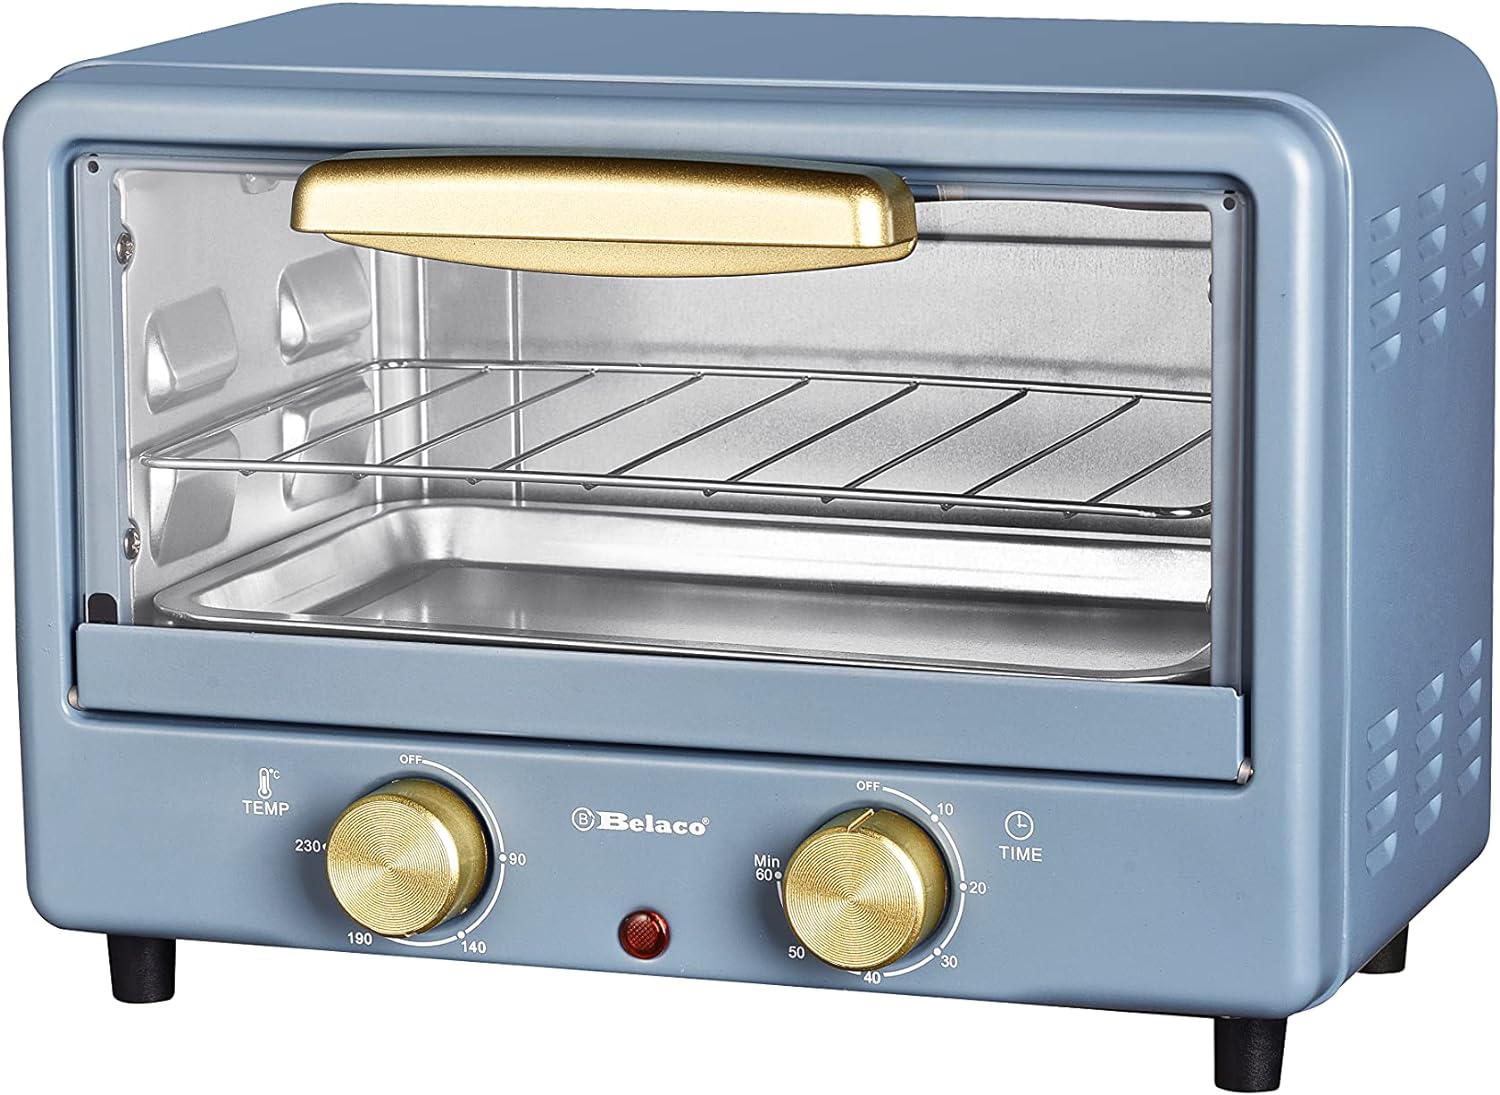 belaco bto 1010l retro mini toaster oven review